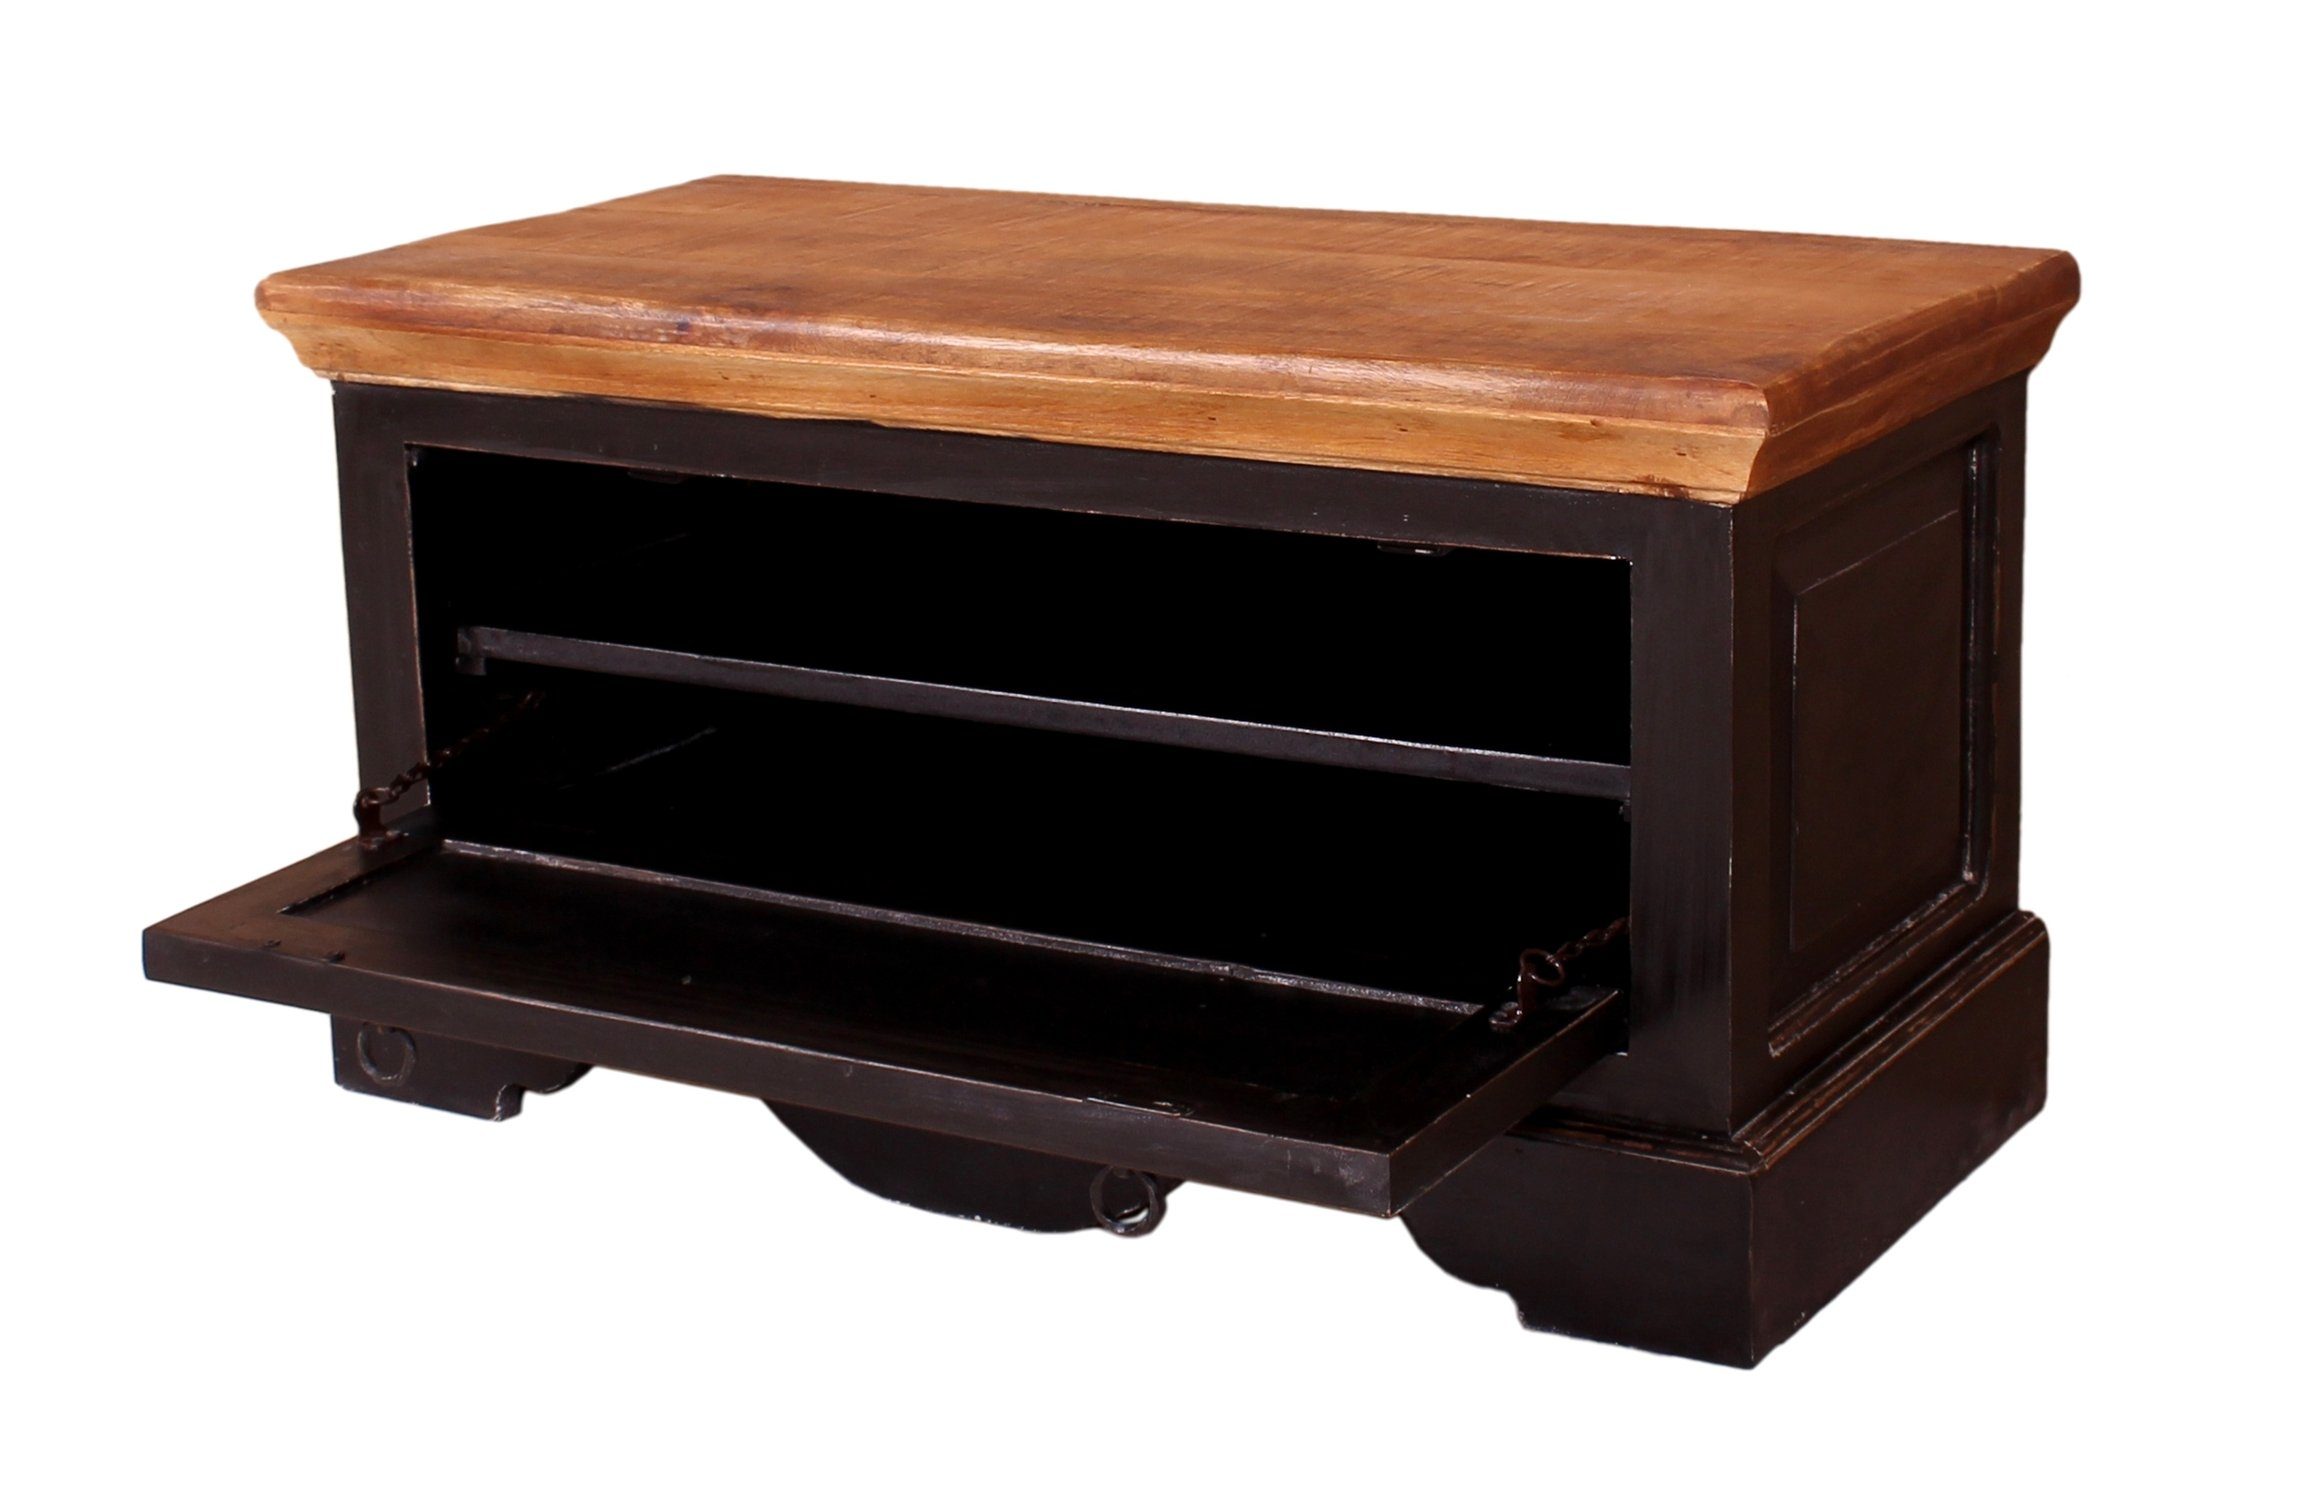 Palawan honigfarbener Möbelstücken, Schuhschrank, 1 Deckplatte), mit mit Garderoben-Set 3 S, (Komplett-Set TPFLiving 2 Garderobenpaneelen